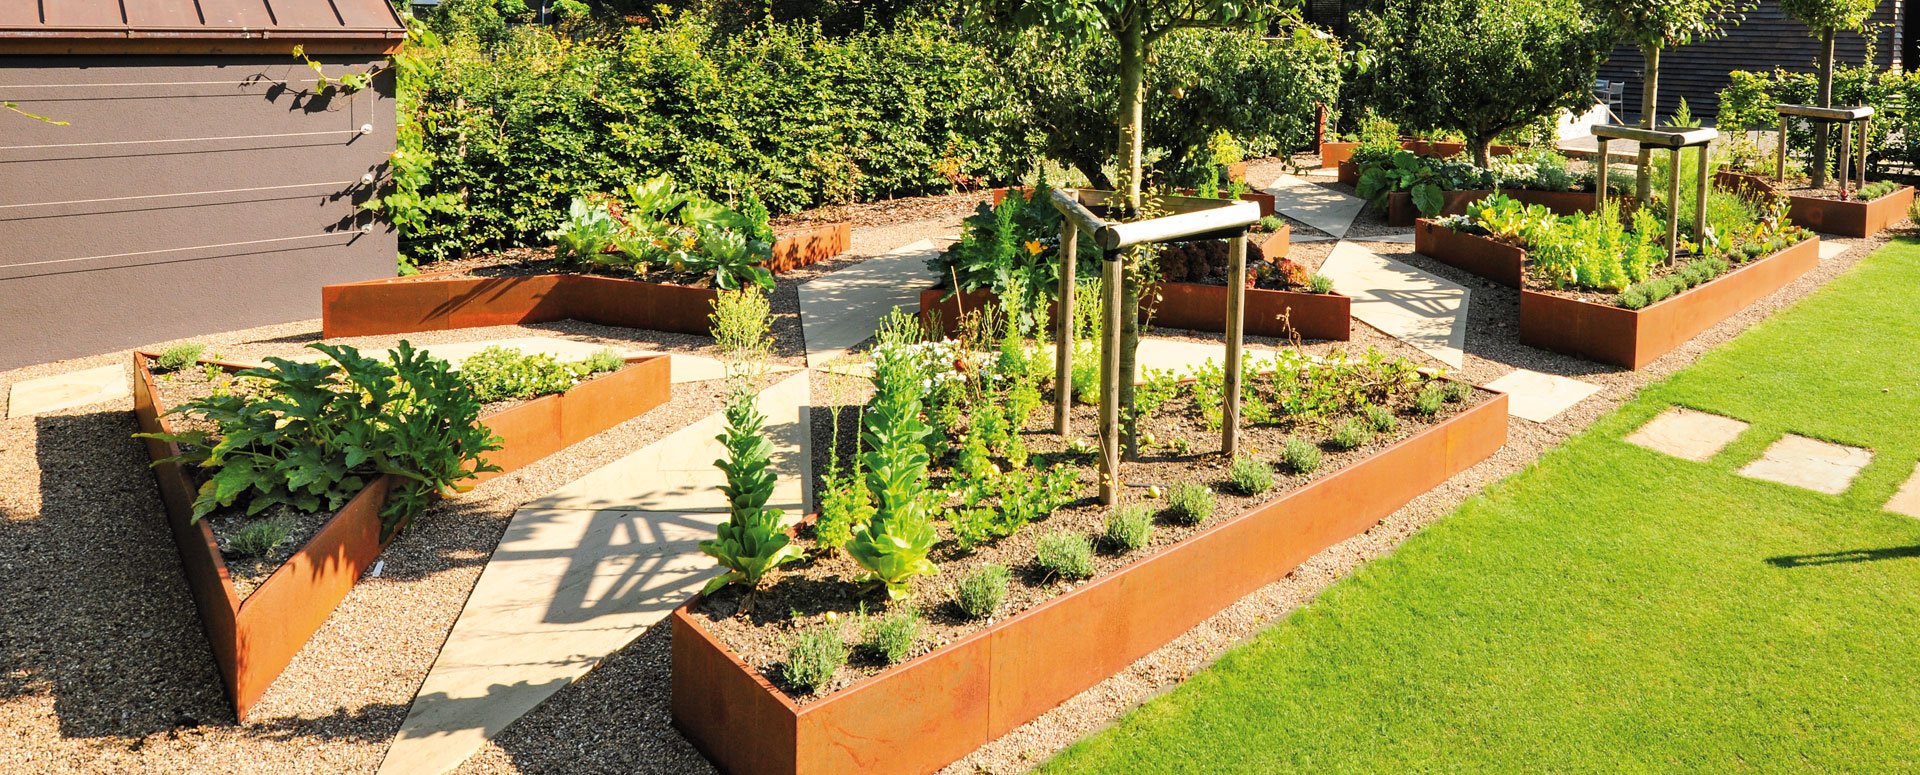 Individuell gefertigte Hochbeete aus Cortenstahl von Richard Brink nach Maß gefertigt mit grünen Pflanzen in einem ordentlichen Garten.